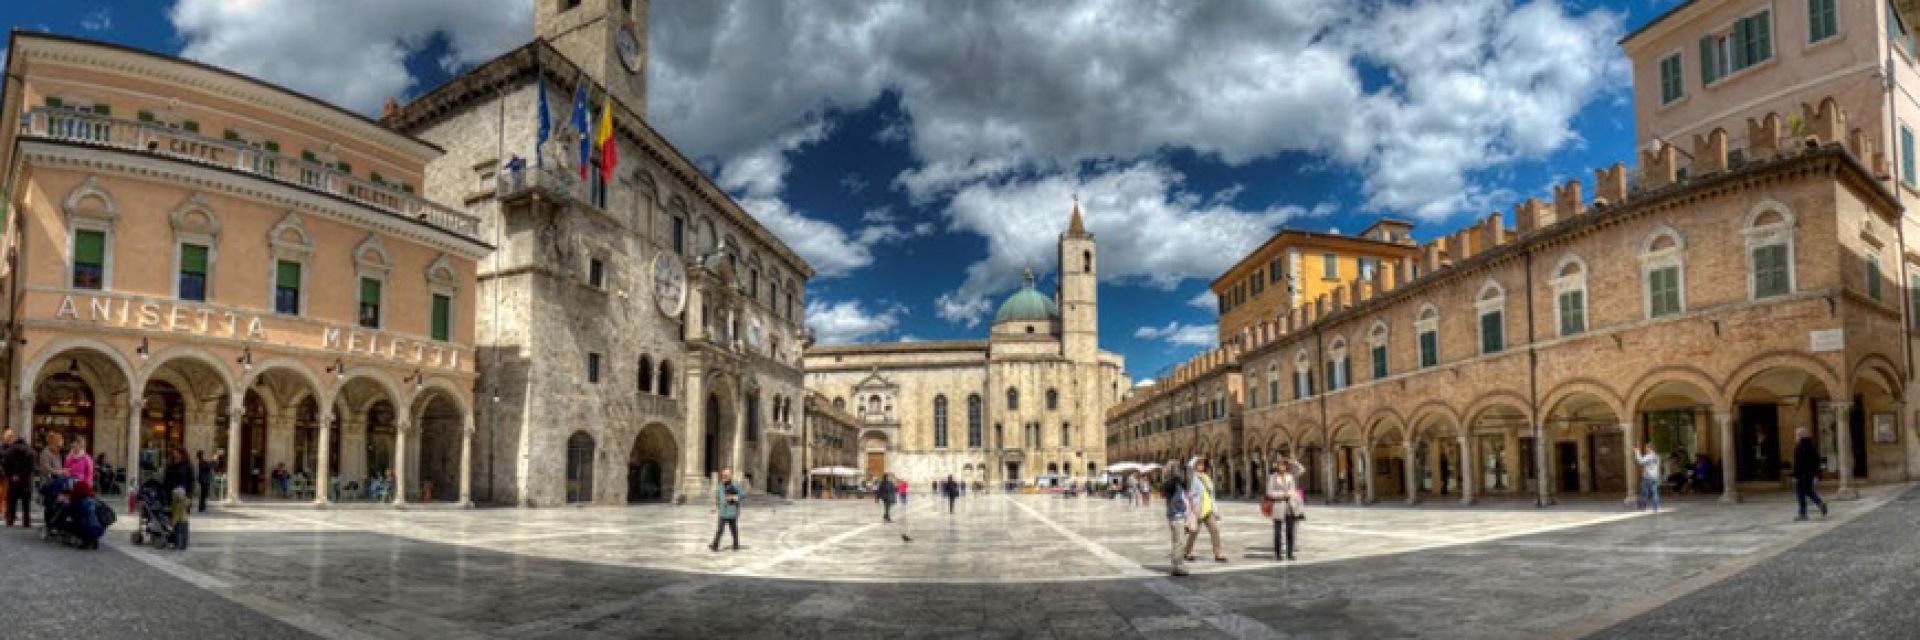 Ascoli Piceno - centro storico